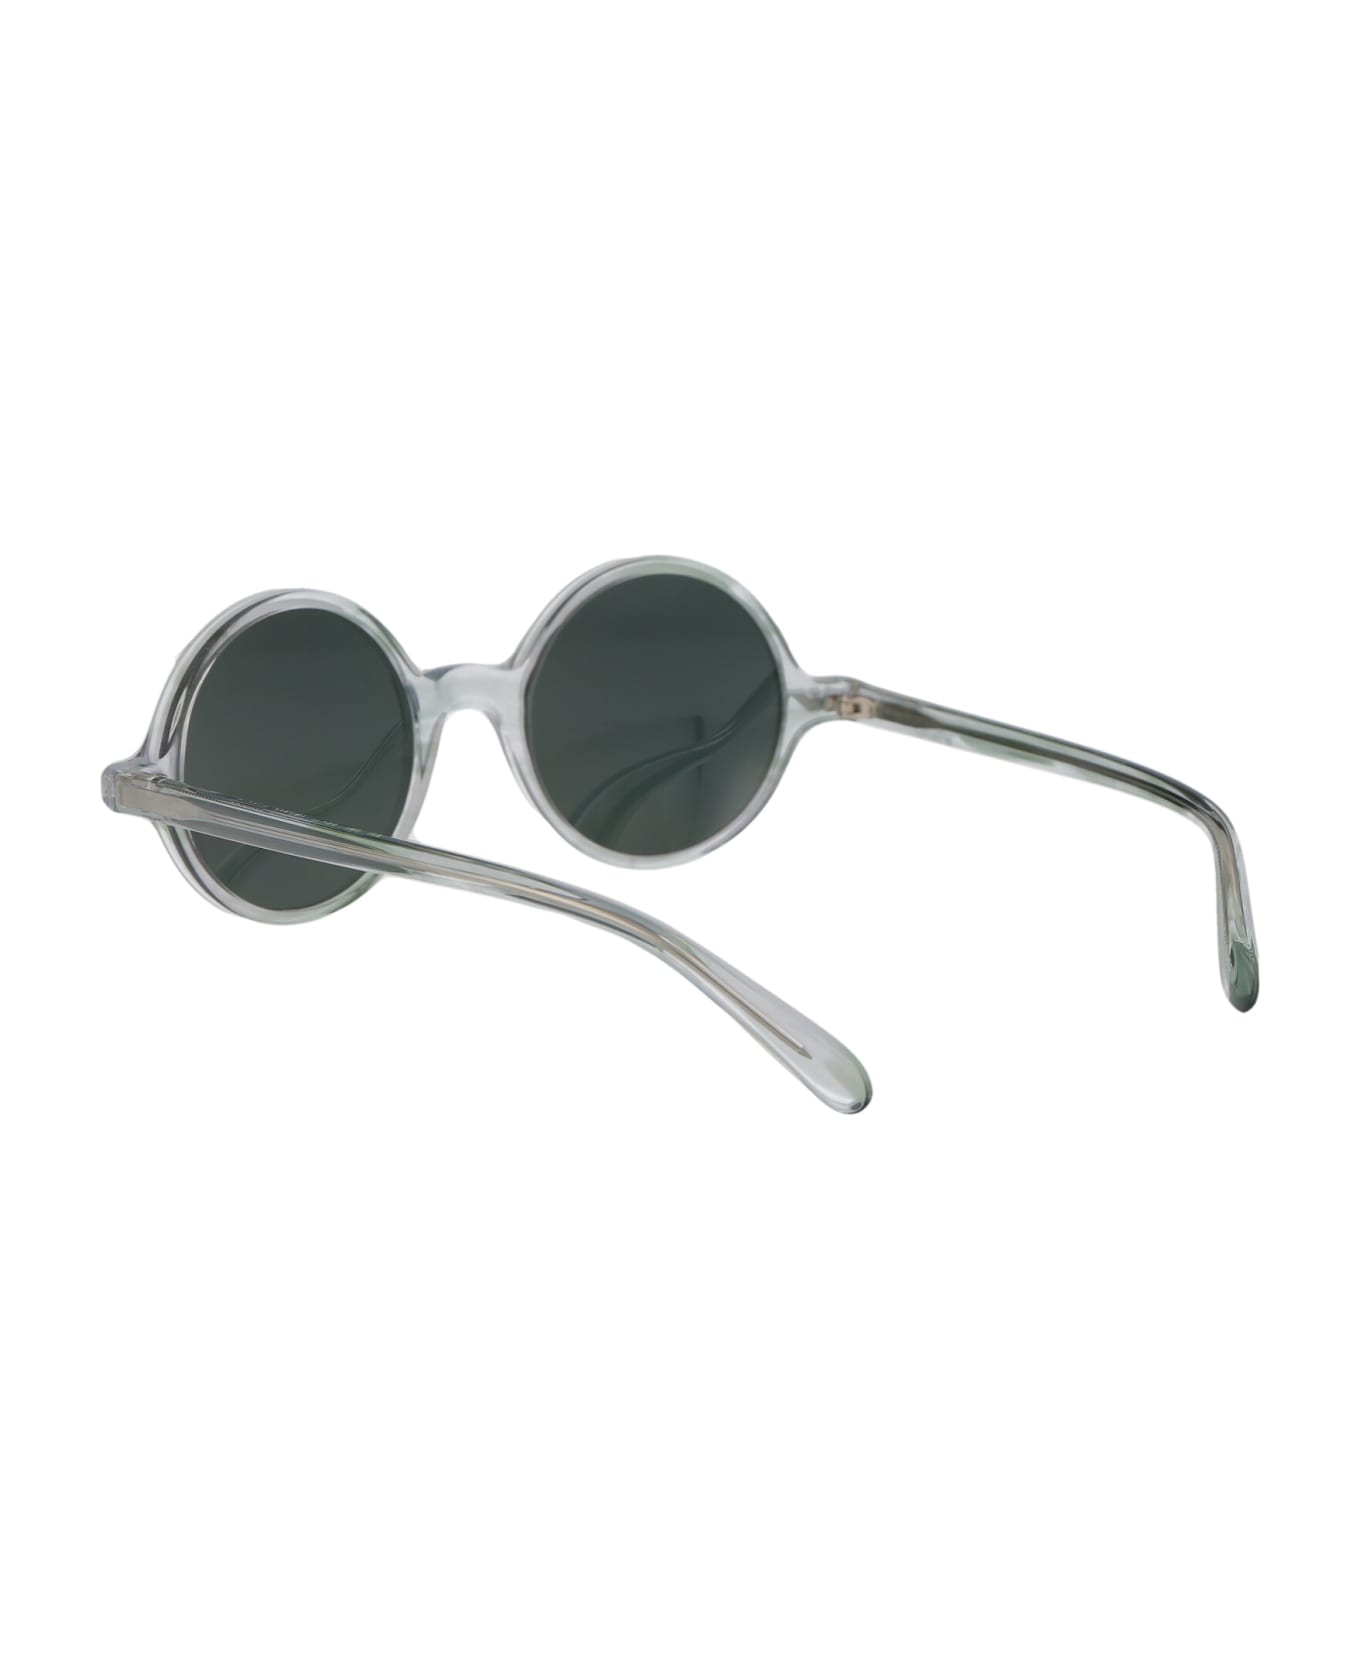 Emporio Armani 0ea 501m Sunglasses - 60216R Crystal Striped Green